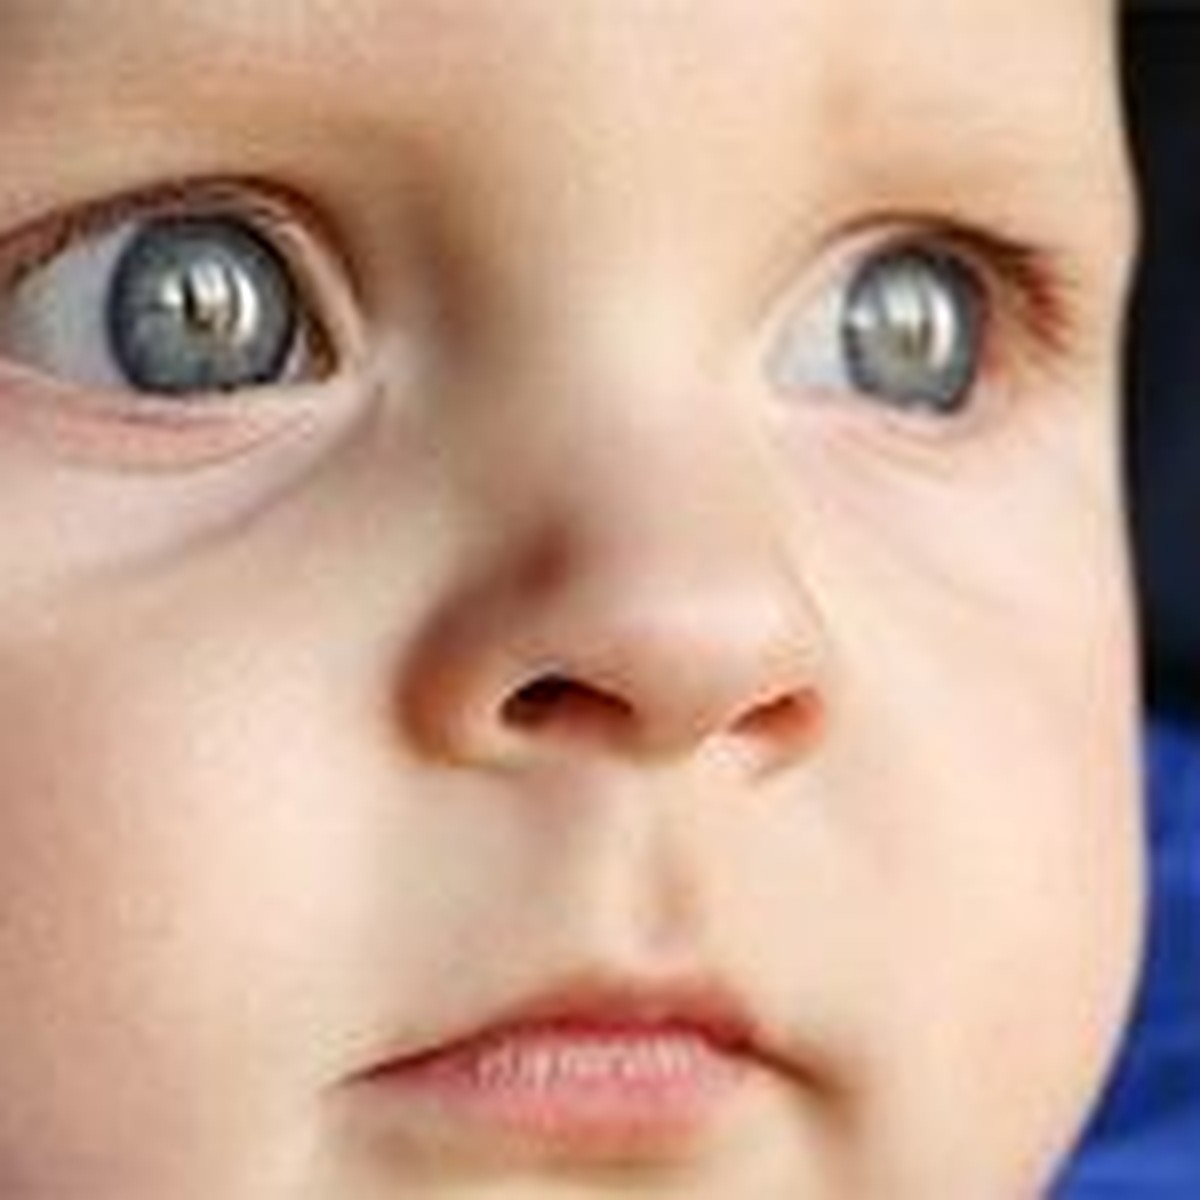 Частое моргание глазами,ребёнку 2 года